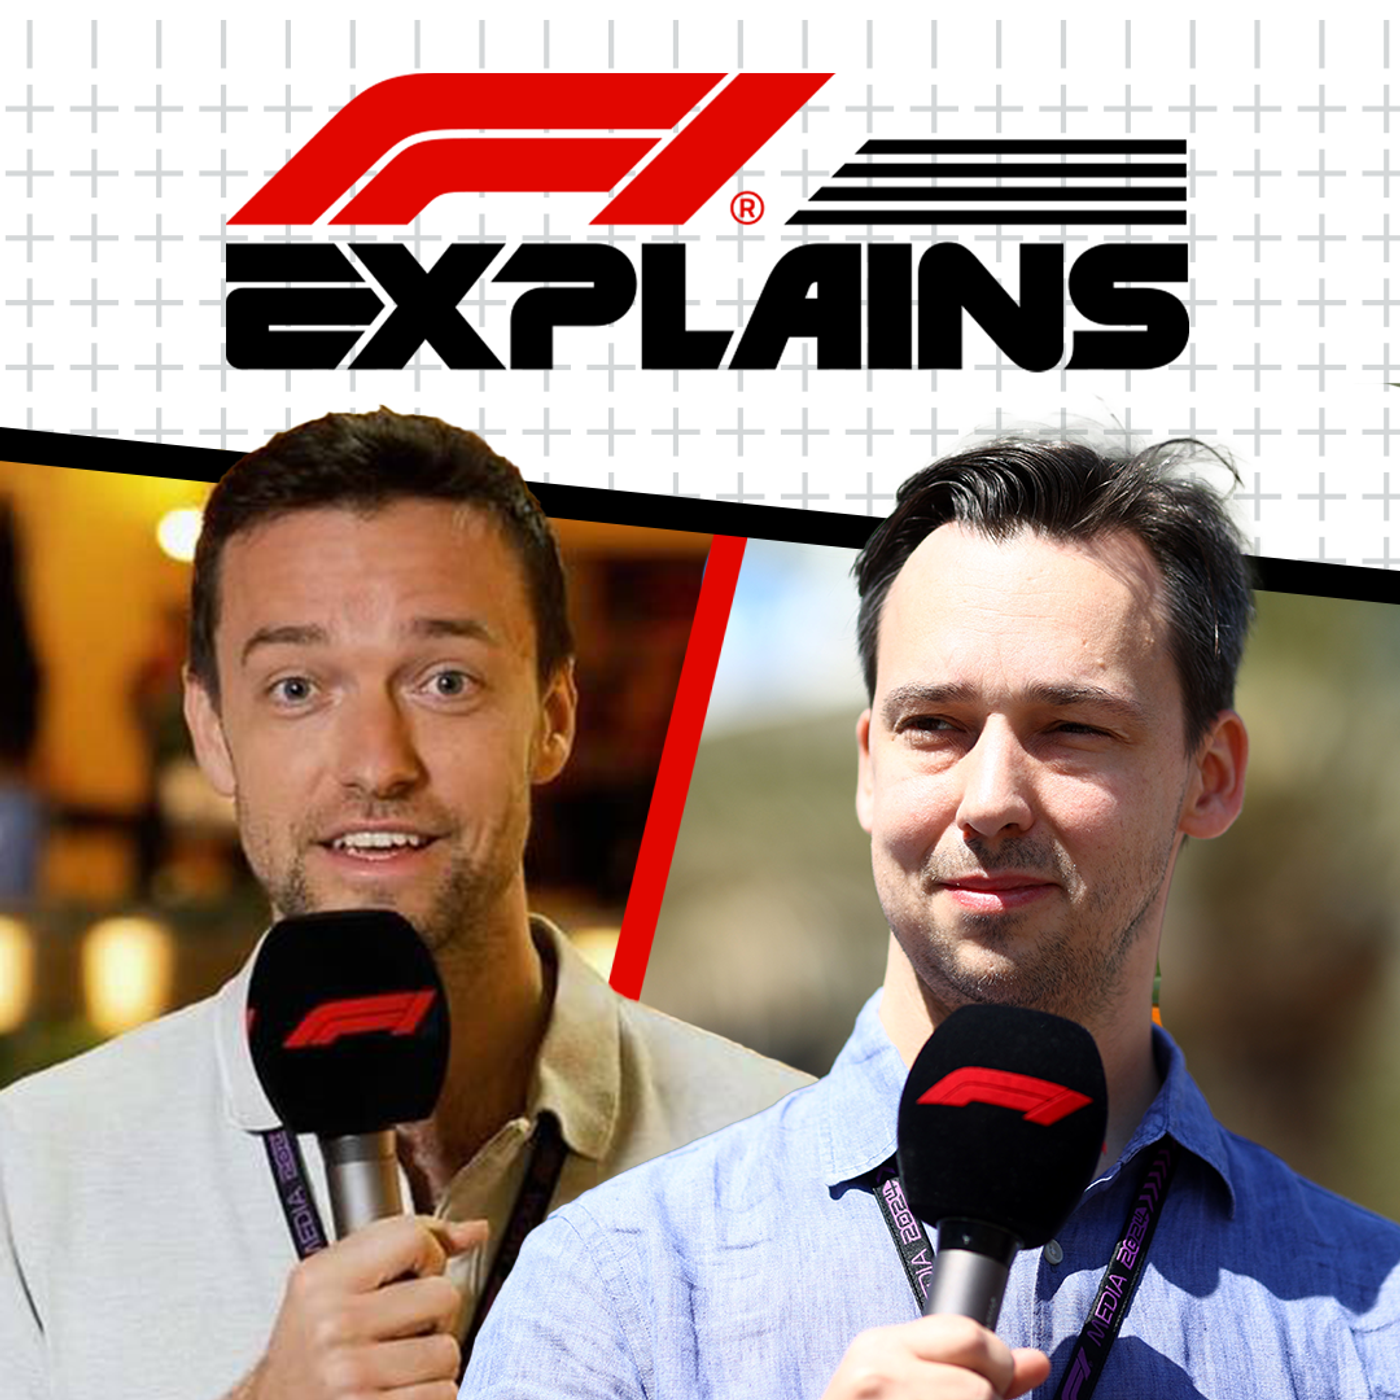 Points, pronunciations + pit lane history - Alex Jacques + Jolyon Palmer answer your questions